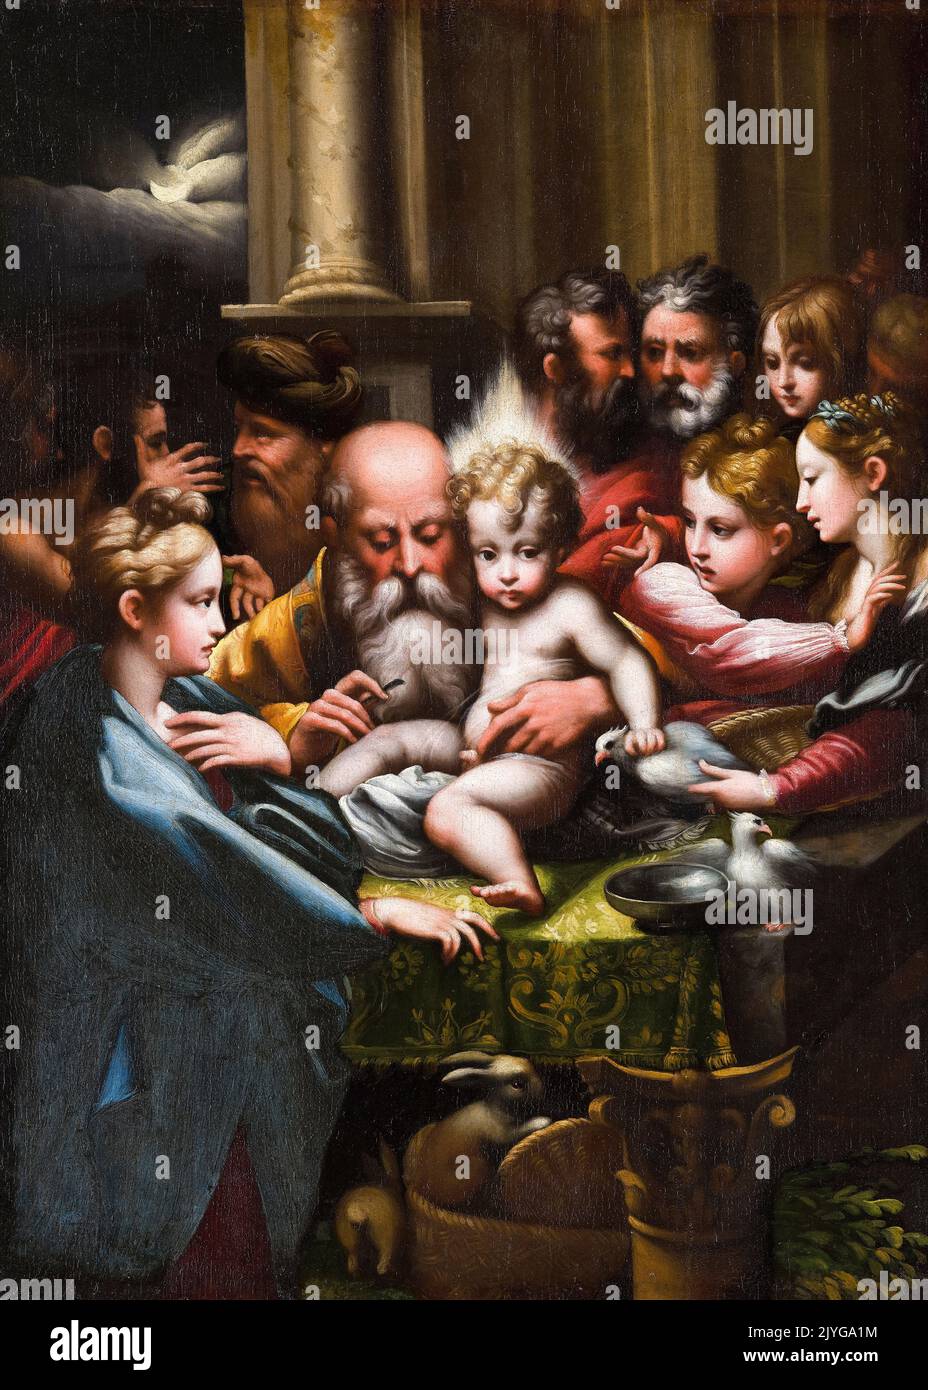 Girolamo Francesco Maria Mazzola a appelé Parmigianino, la circoncision, peinture dans l'huile sur panneau, 1520-1529 Banque D'Images